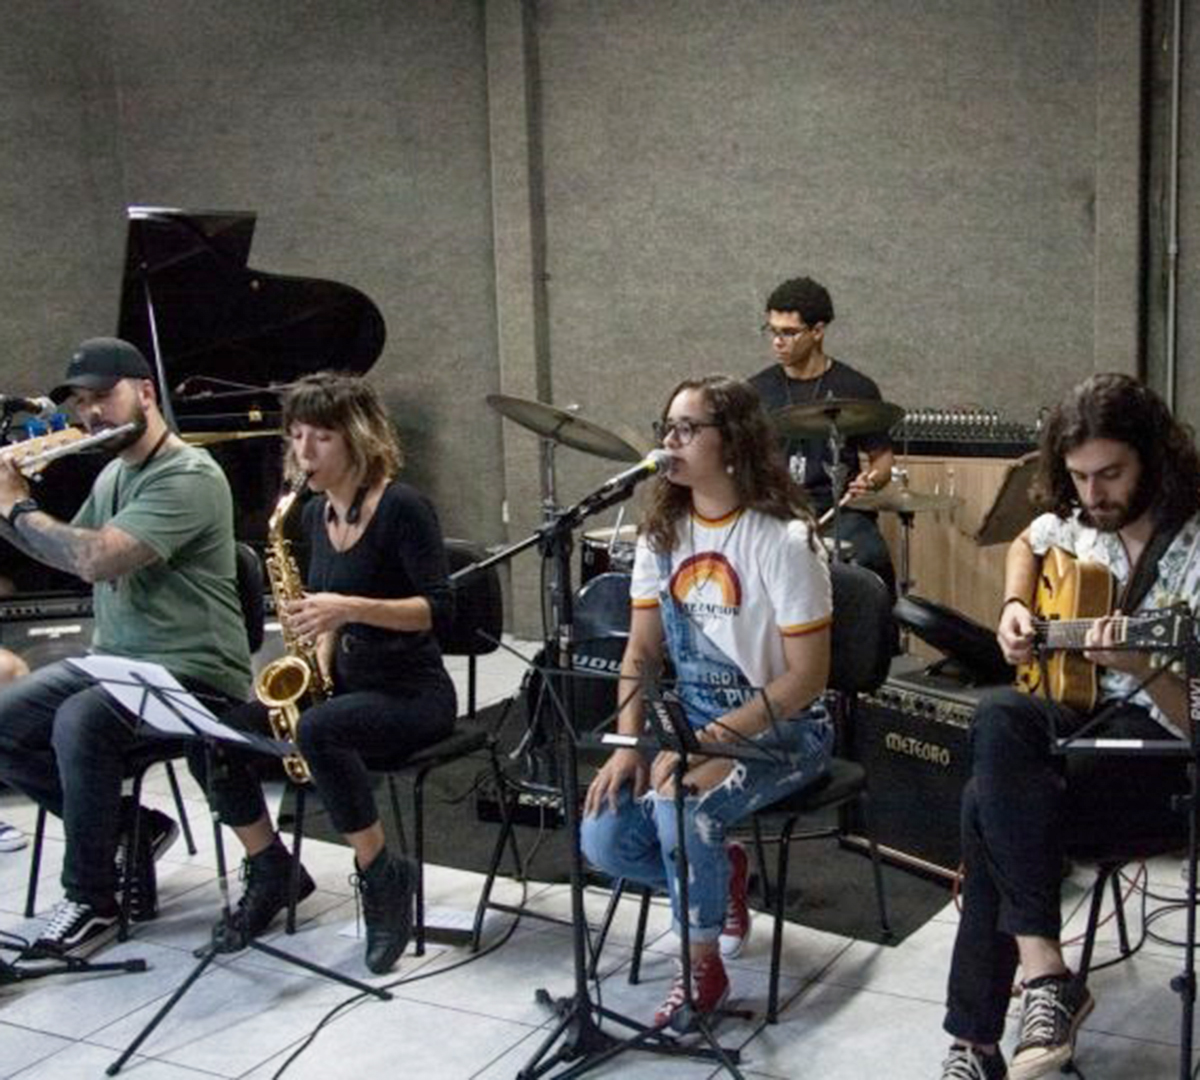 Concursos em homenagem a músicos são abertos no Conservatório de Tatuí